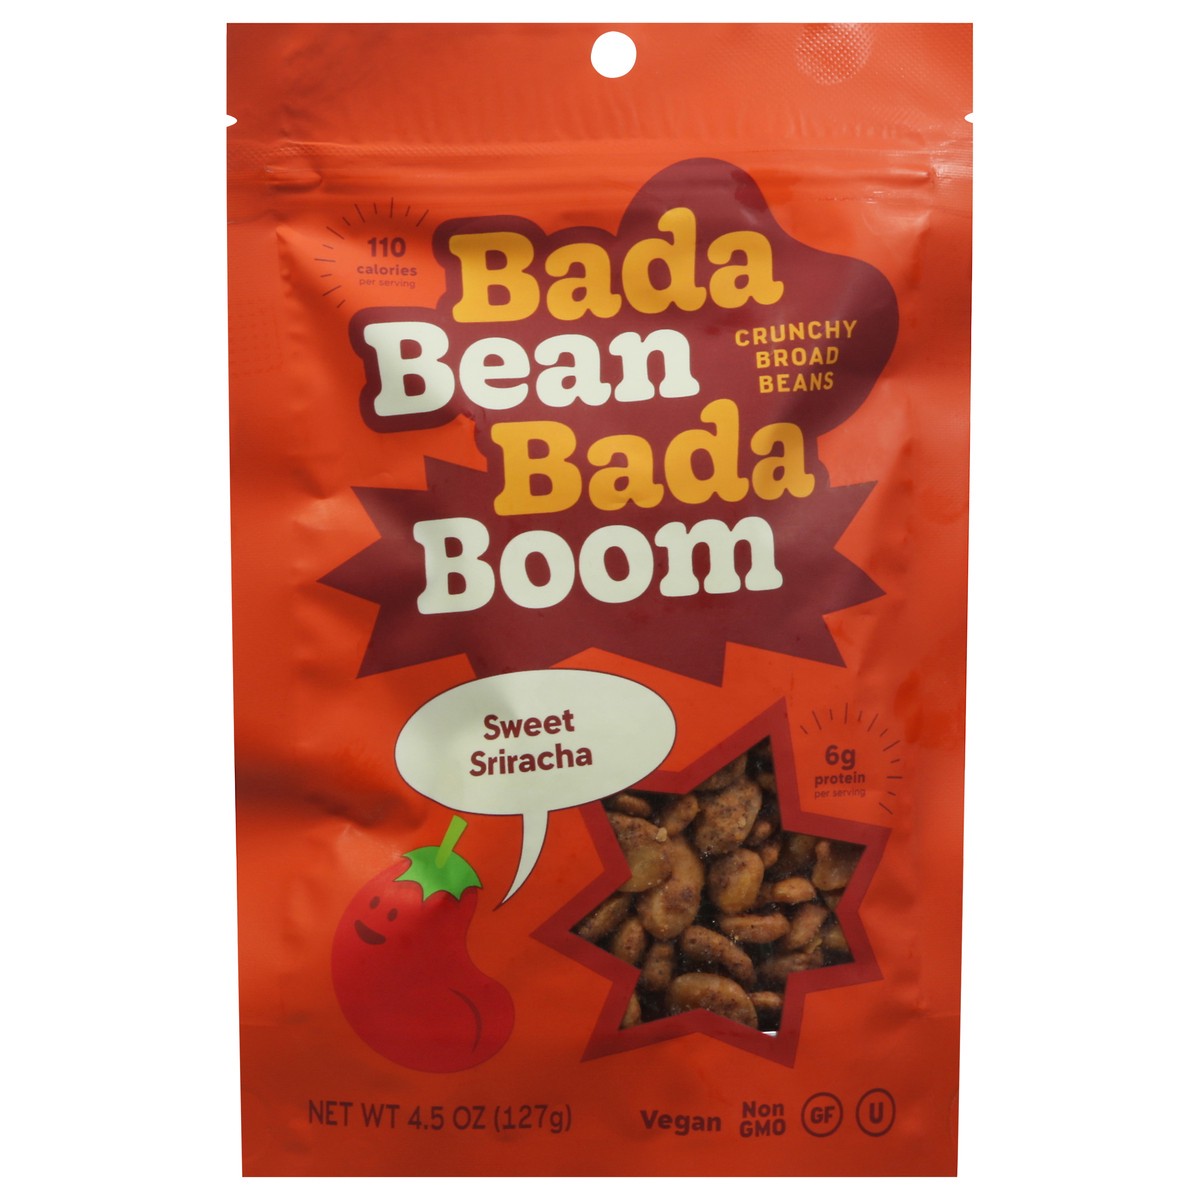 slide 1 of 11, Bada Bean Bada Boom Crunchy Sweet Sriracha Broad Beans 4.5 oz, 4.5 oz